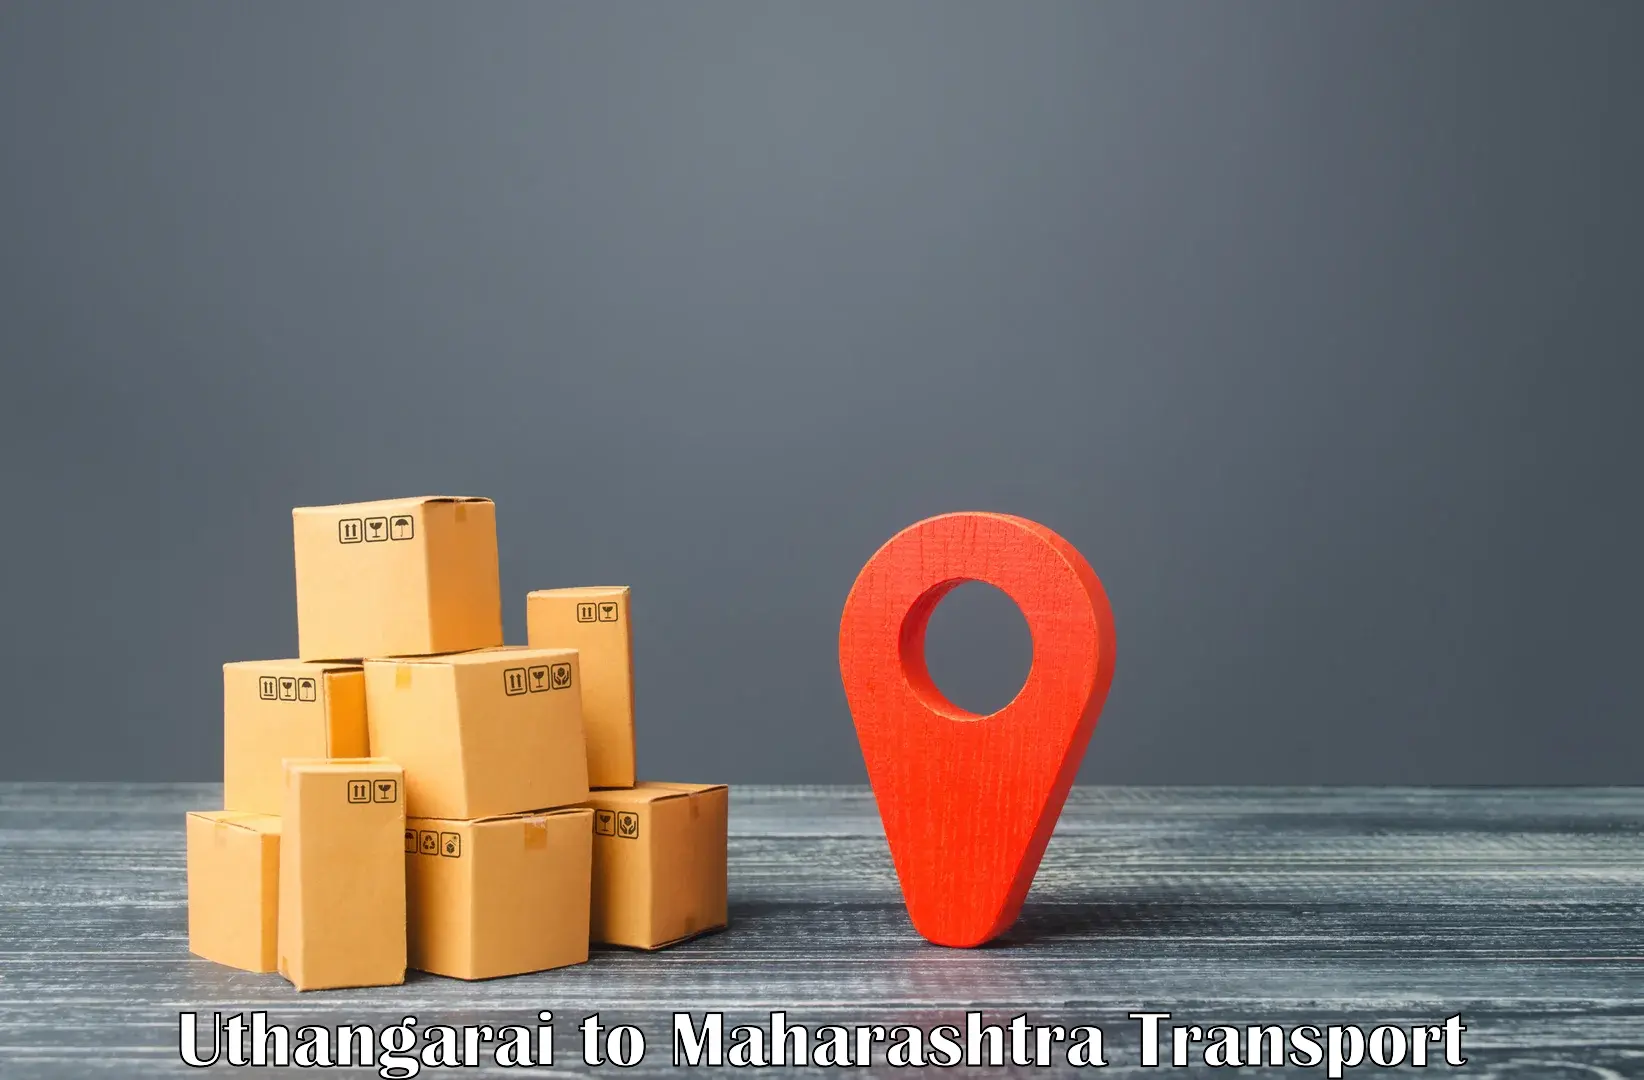 Furniture transport service Uthangarai to Maharashtra